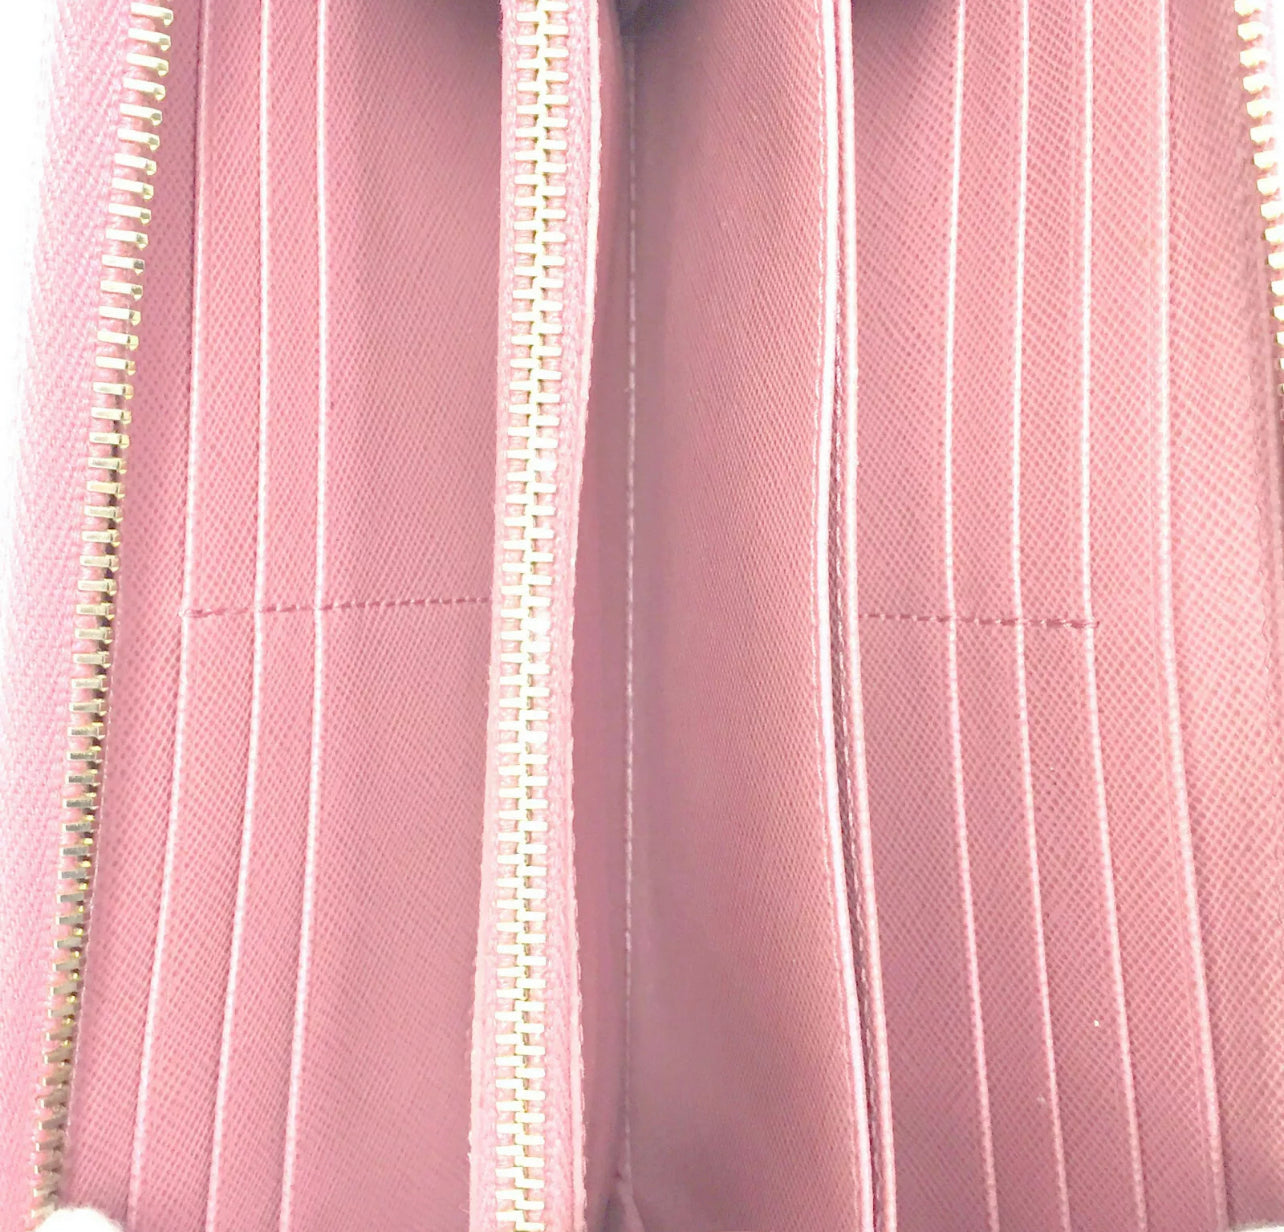 PRELOVED PRADA Saffiano Pink Leather Zip Around Long Wallet 082821 3HBTWMR FLASH SALE